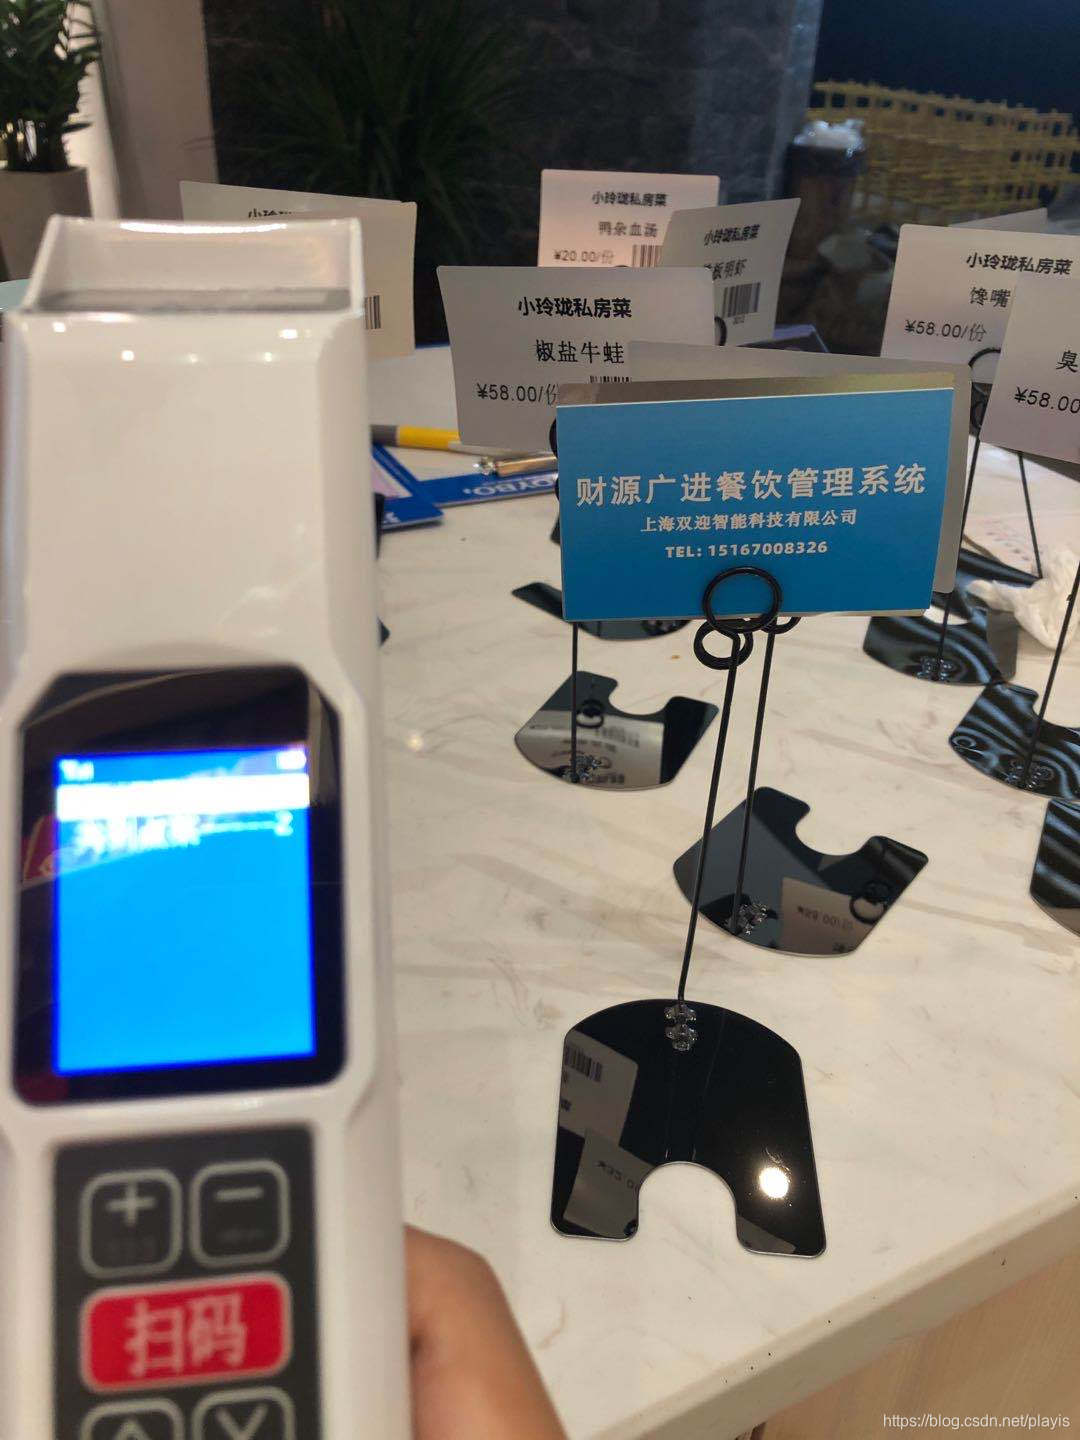 上海双迎智能科技有限公司财源广进餐饮系统